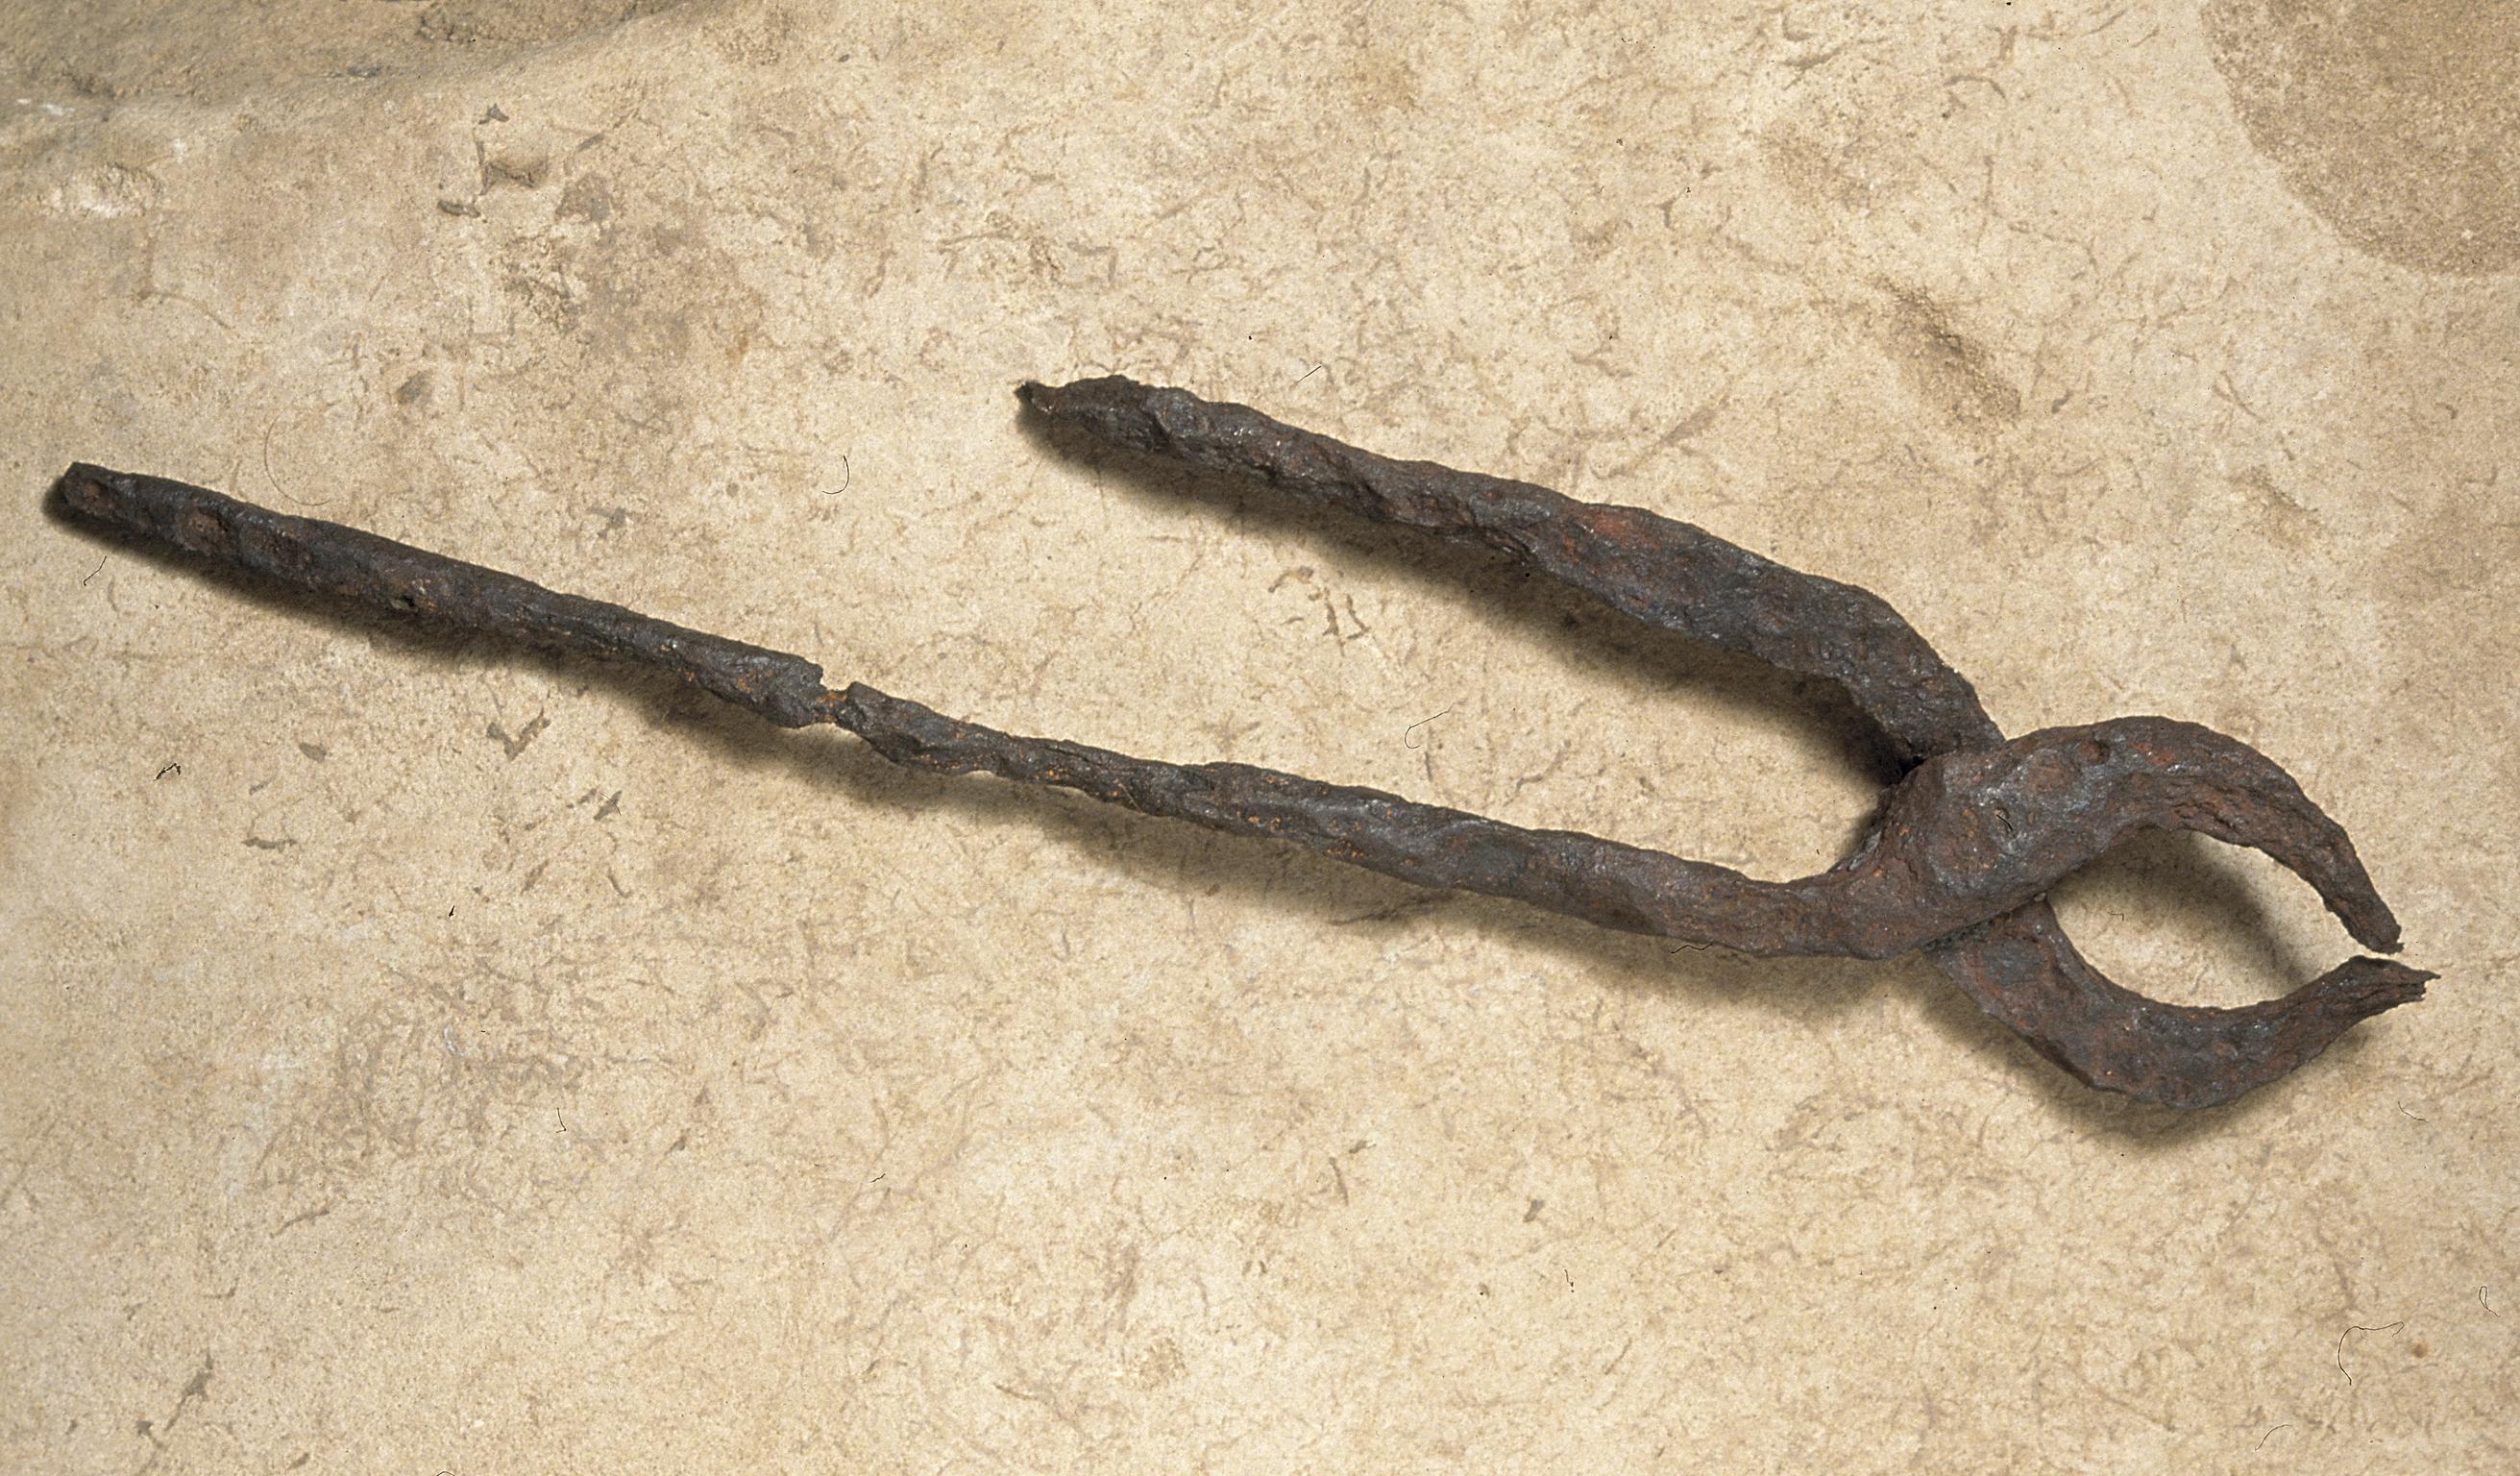 Roman iron blacksmith's tongs